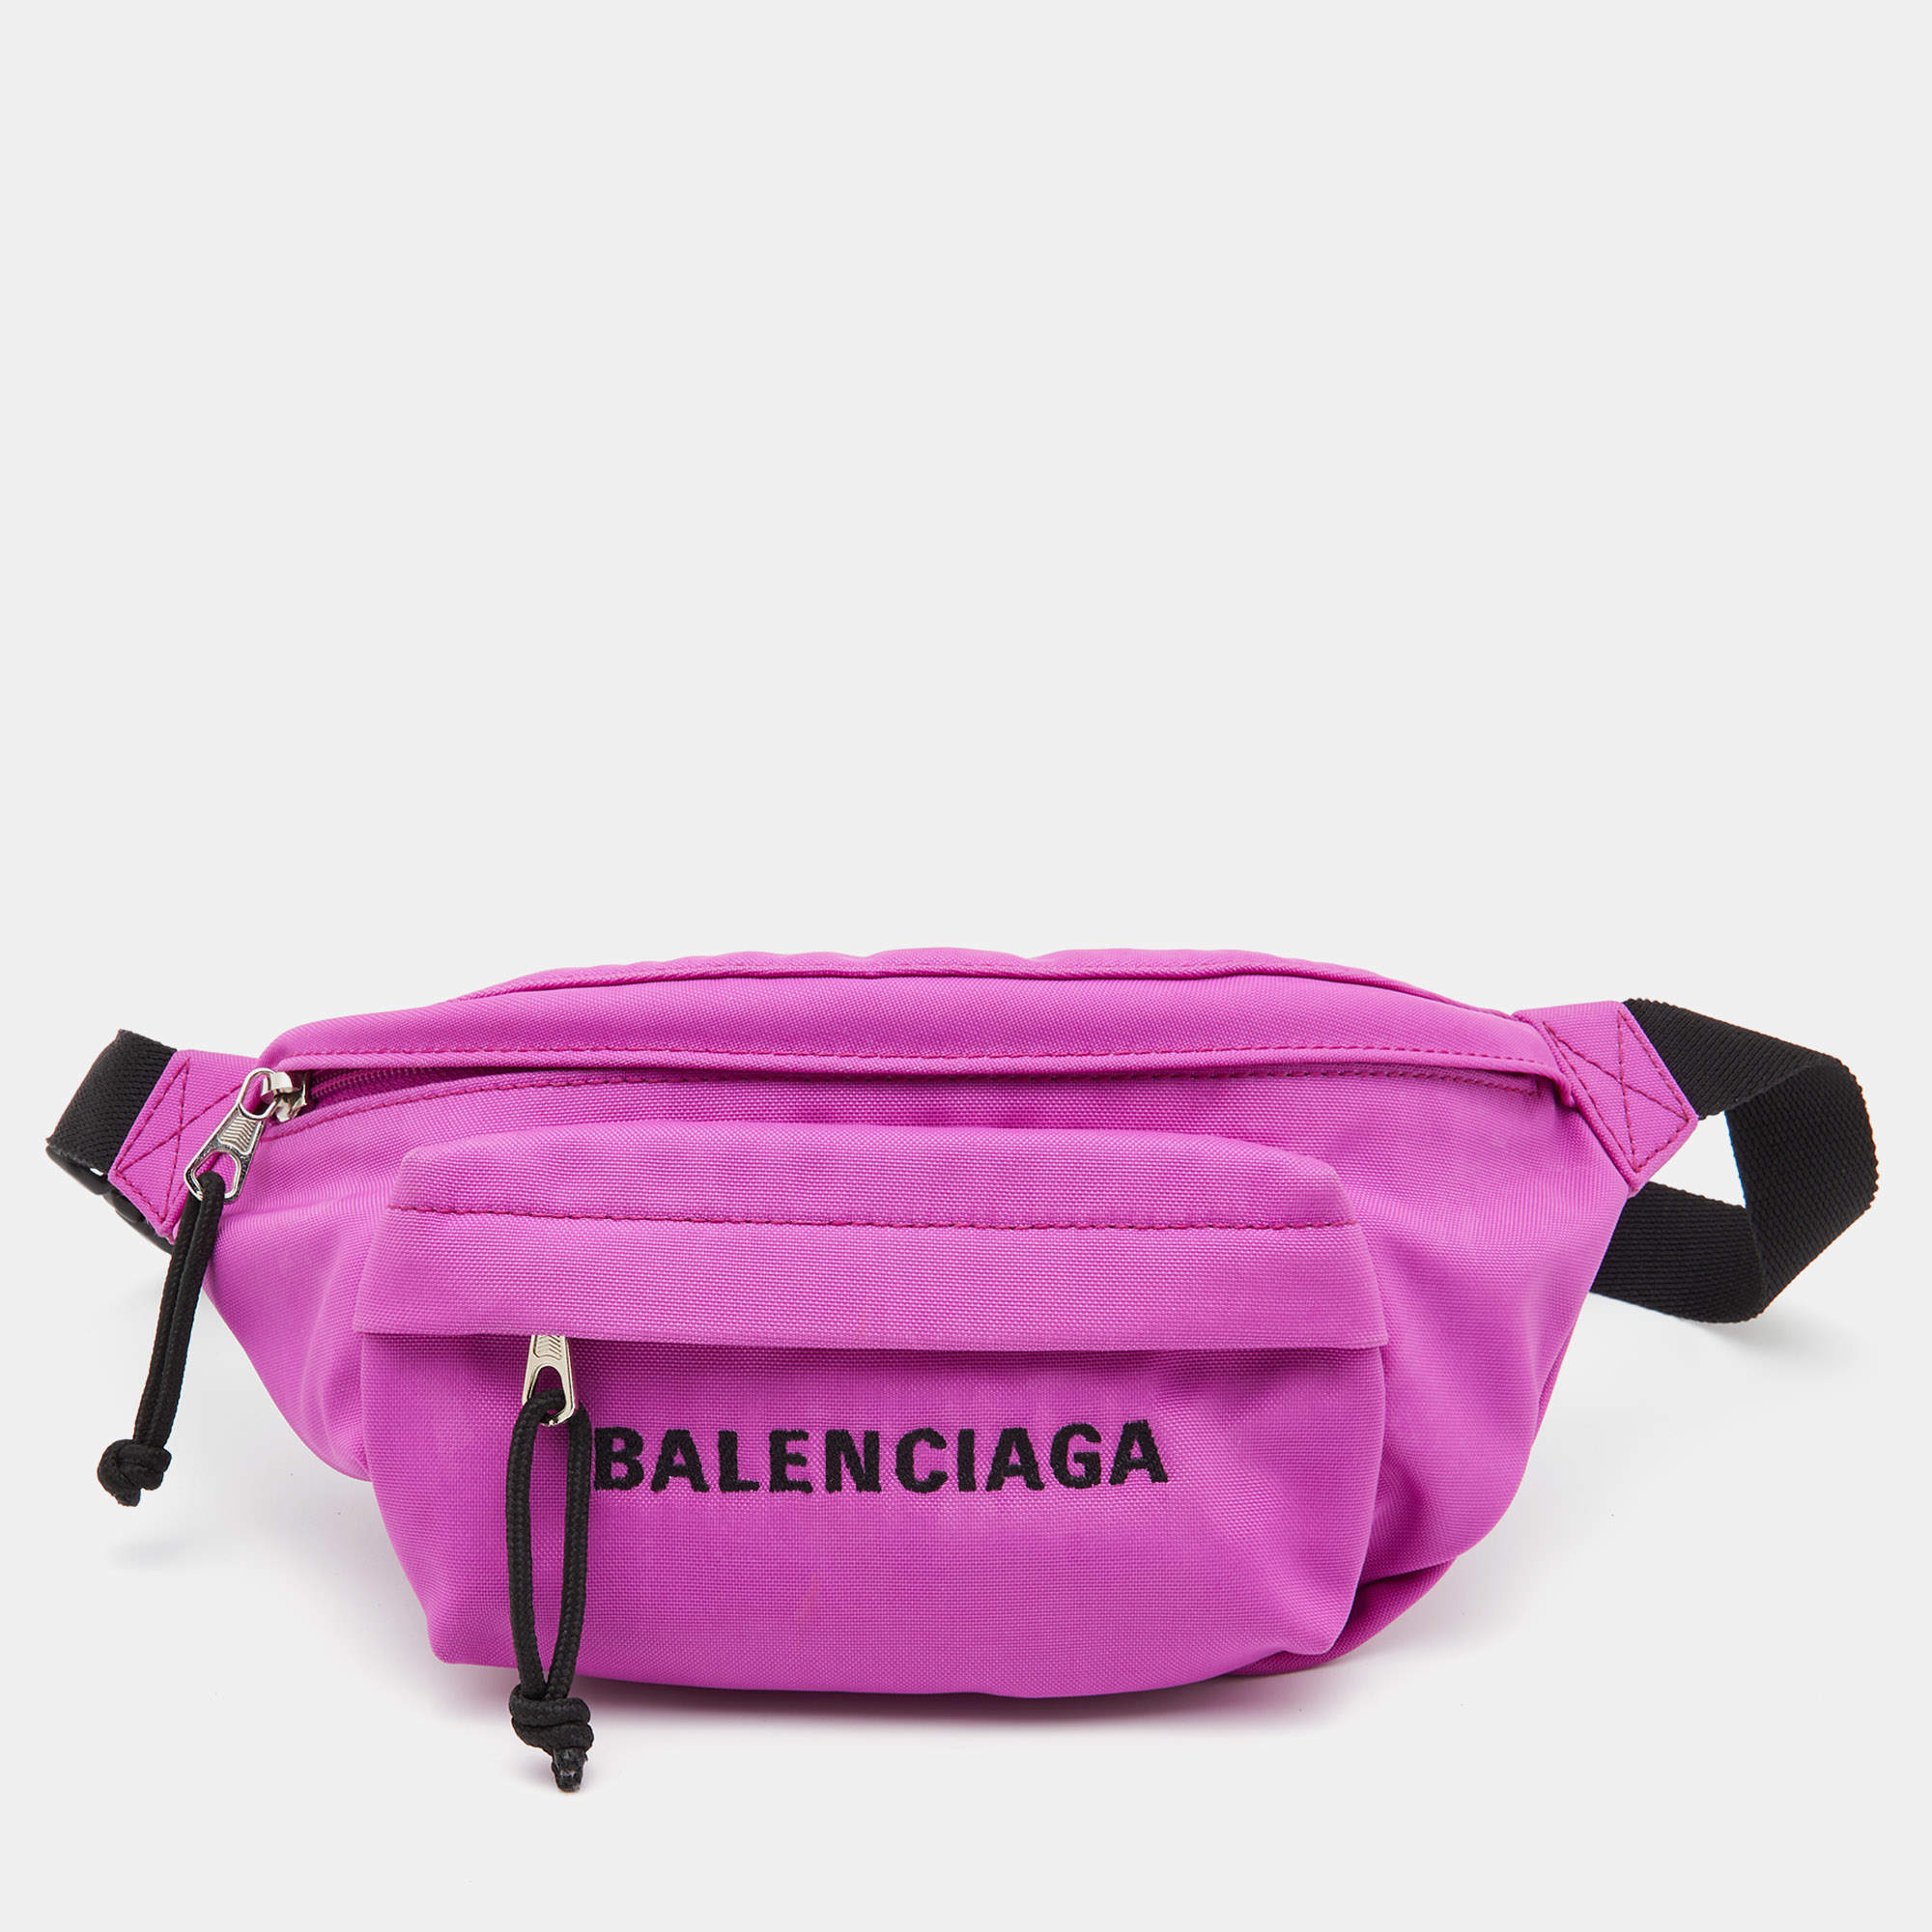 Roble Irregularidades pedestal Balenciaga Neon Pink Nylon Everyday Belt Bag Balenciaga | TLC